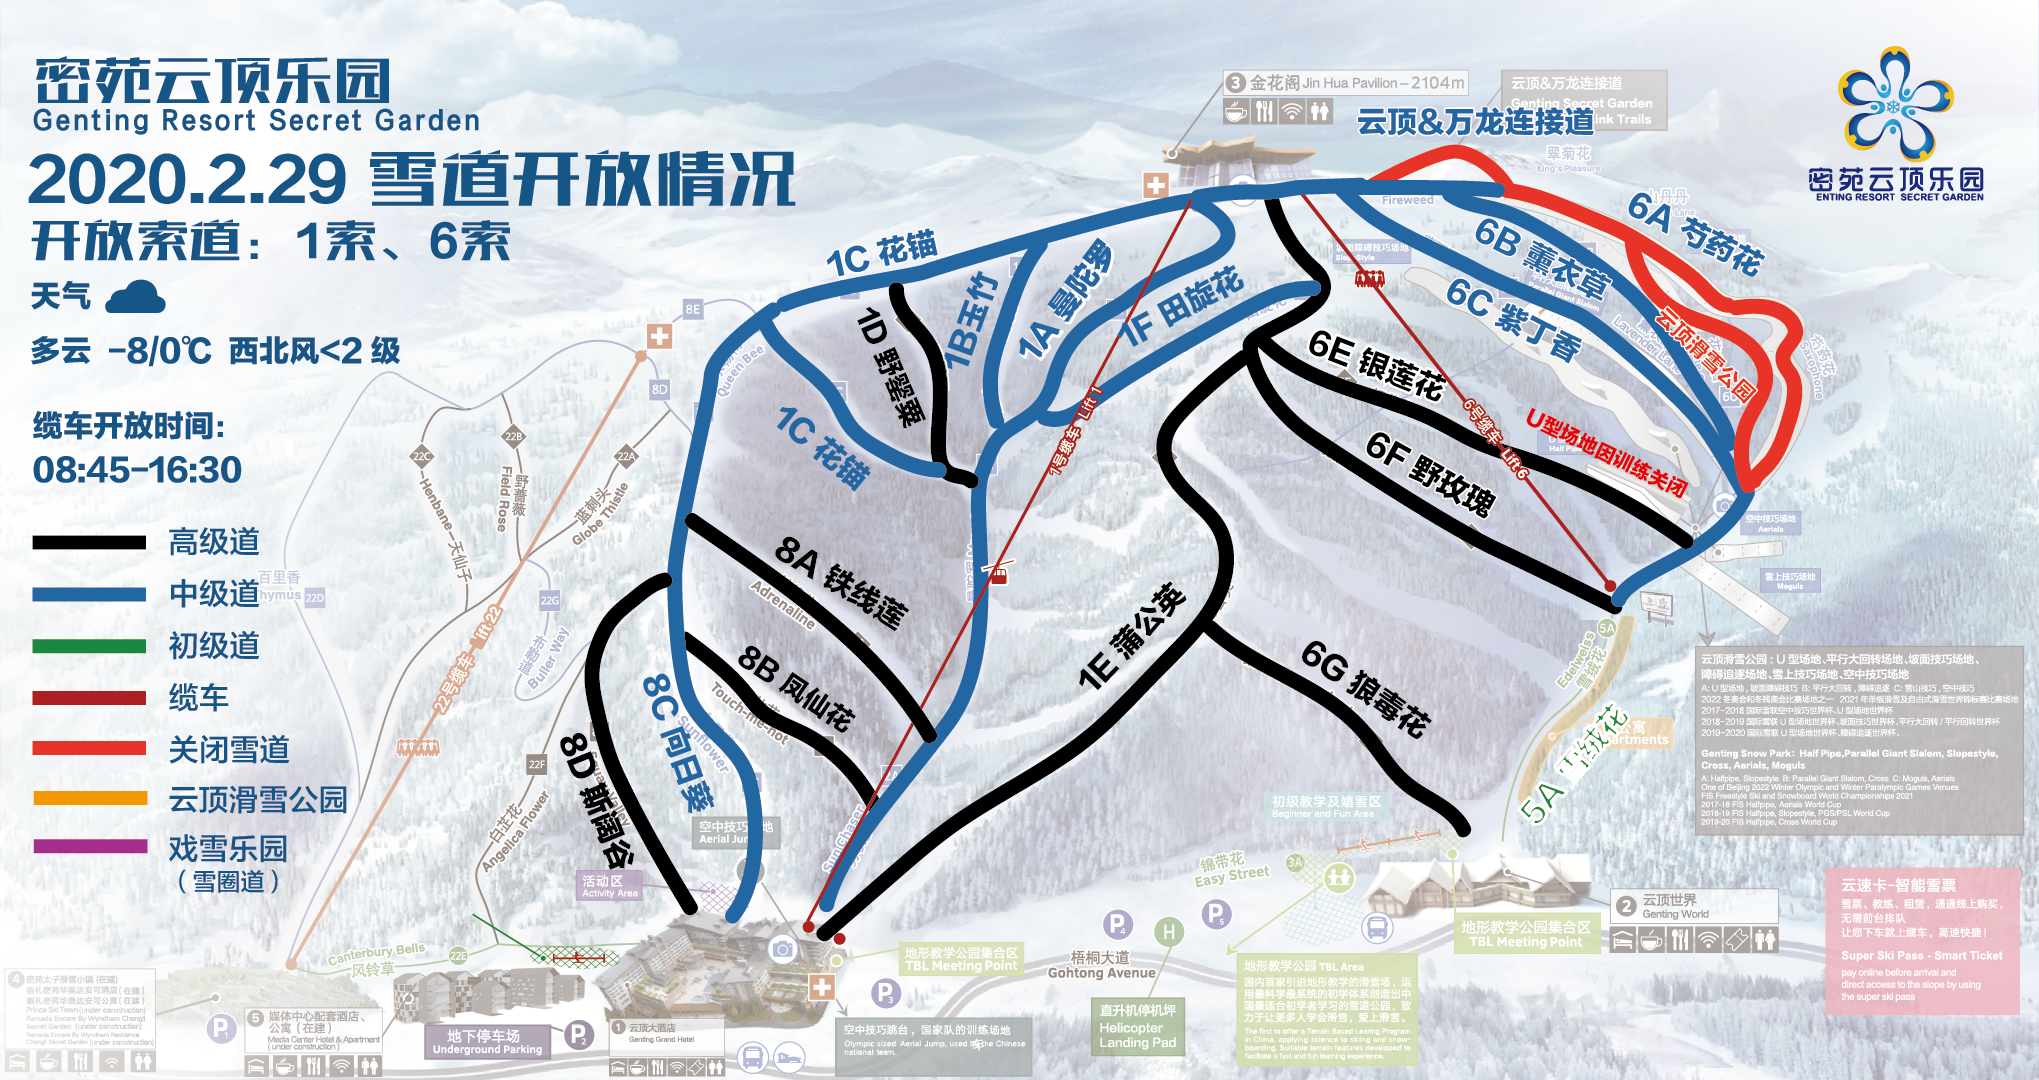 崇礼云顶滑雪场2月28日复业开放 采取实名预约制滑雪